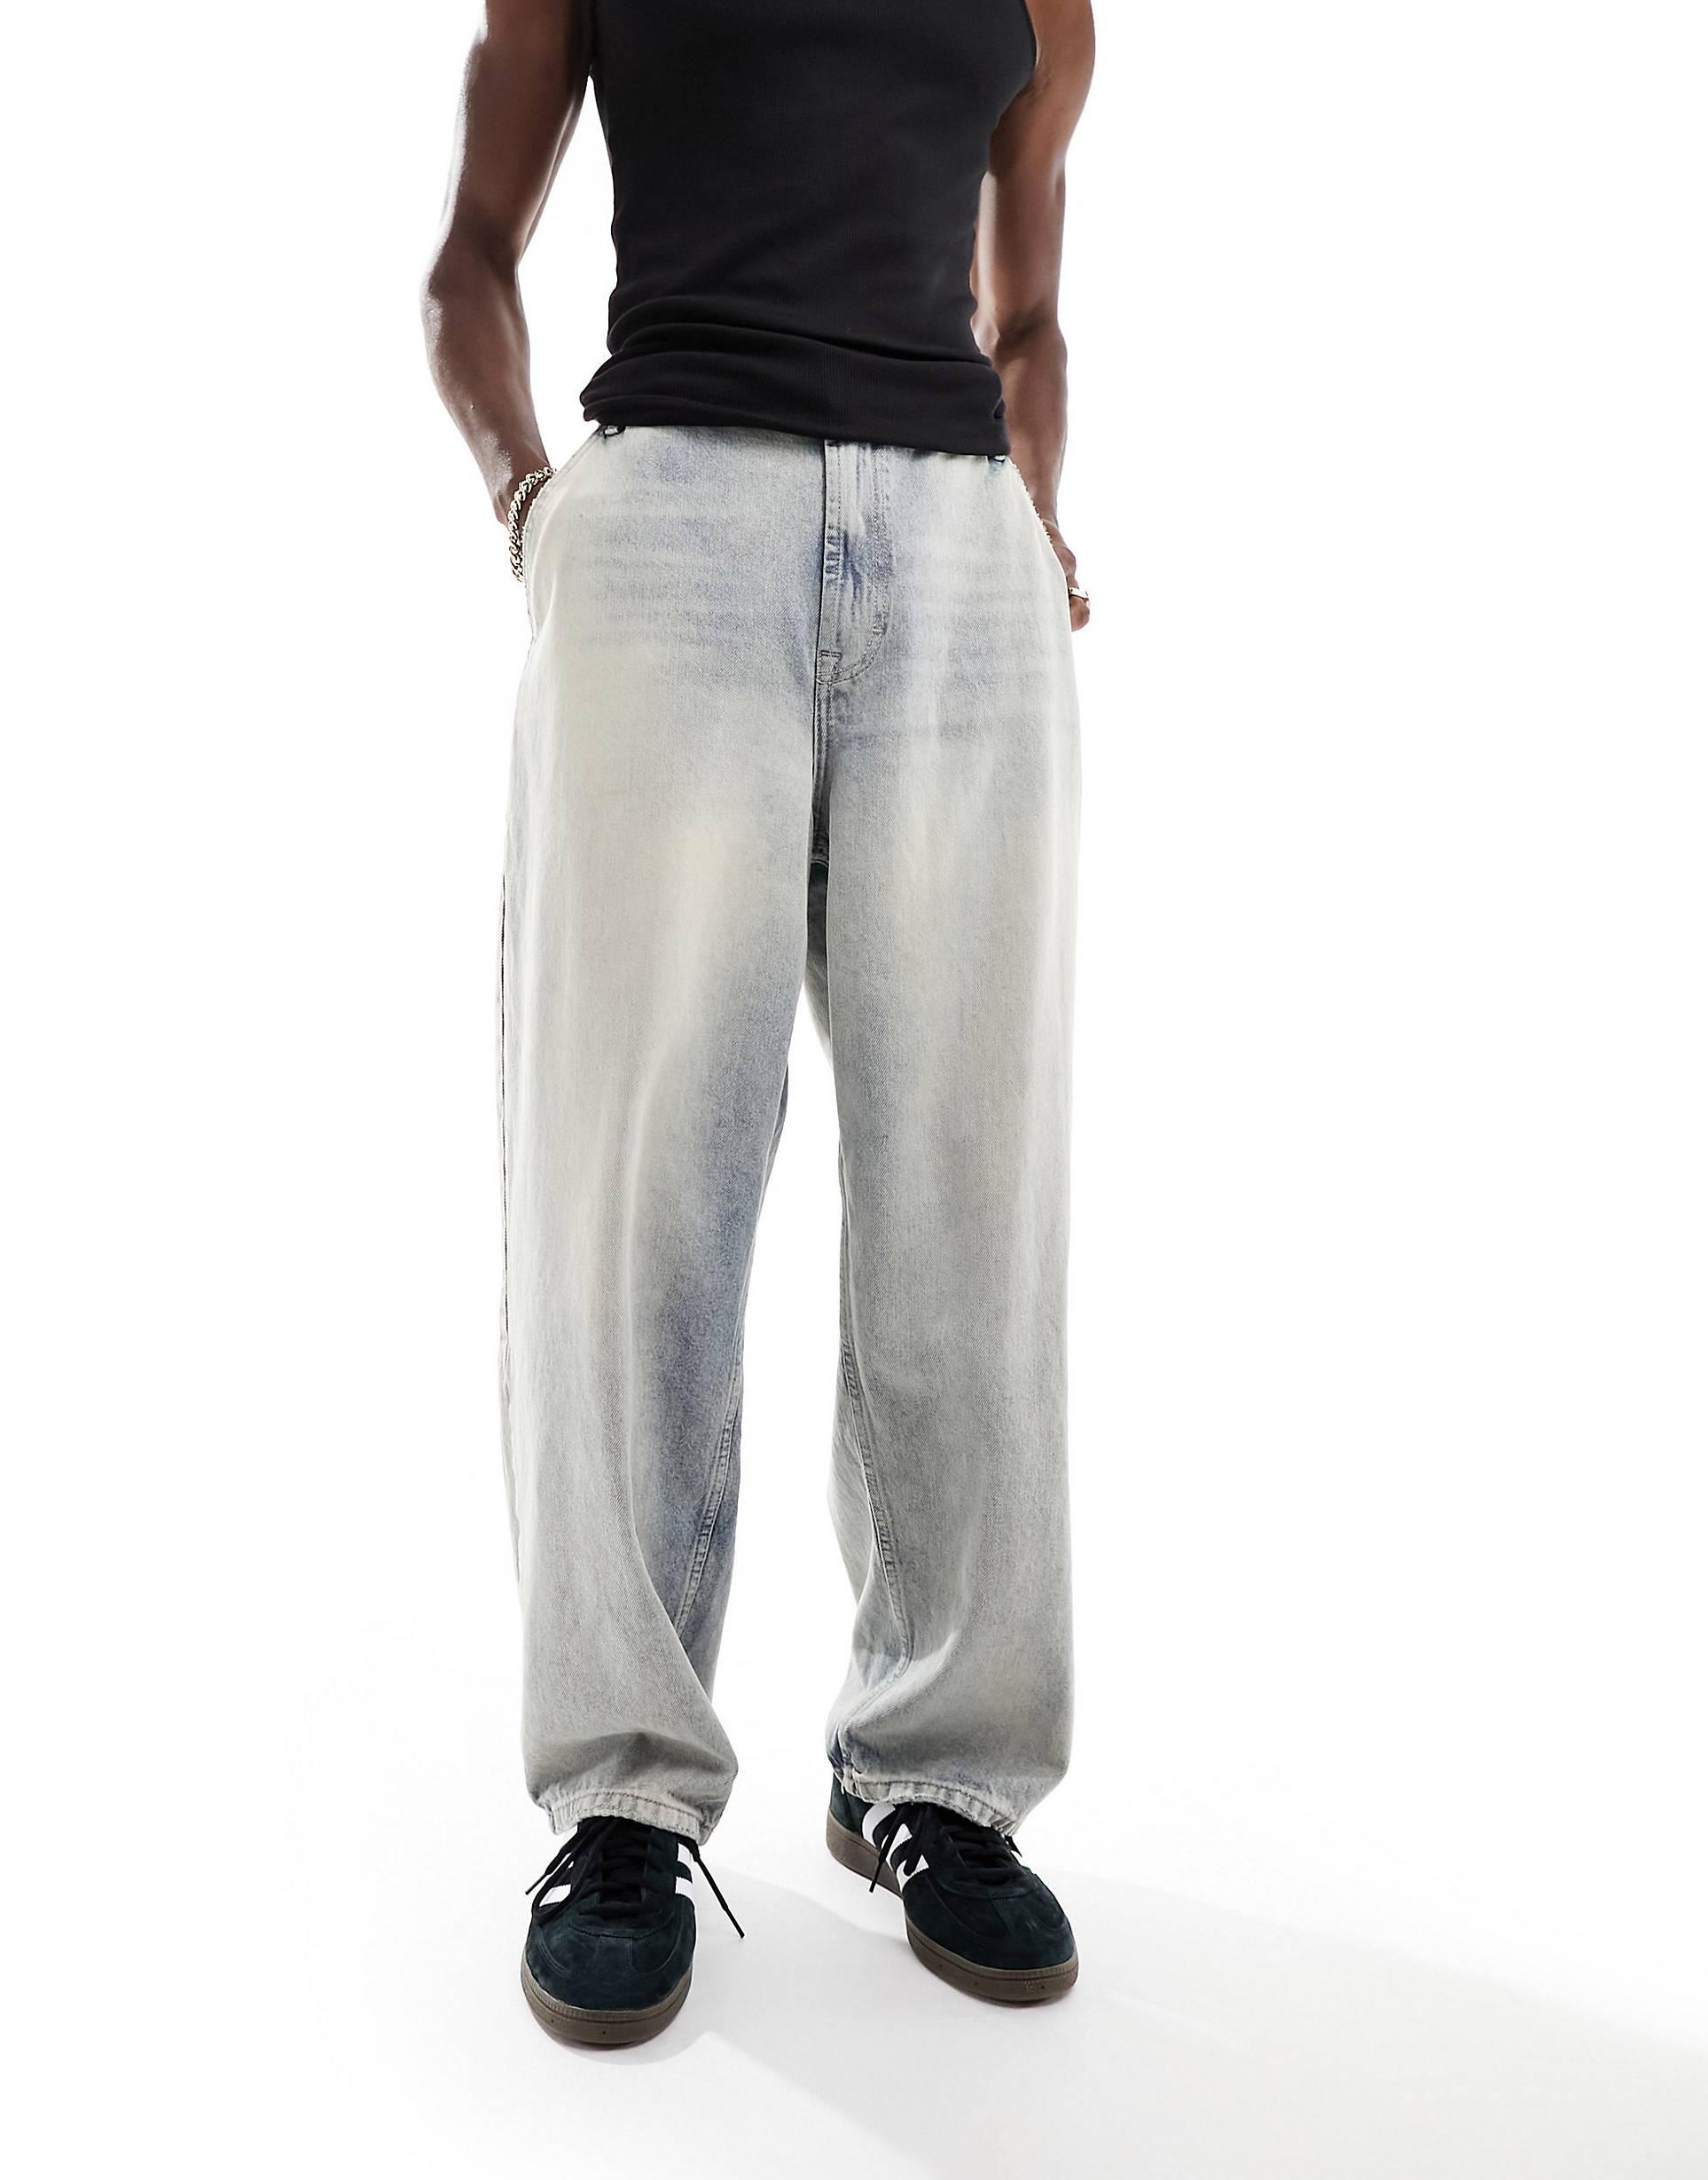 Джинсы Bershka Skater Fit, светло-синий джинсы bershka с потертостями 42 размер новые